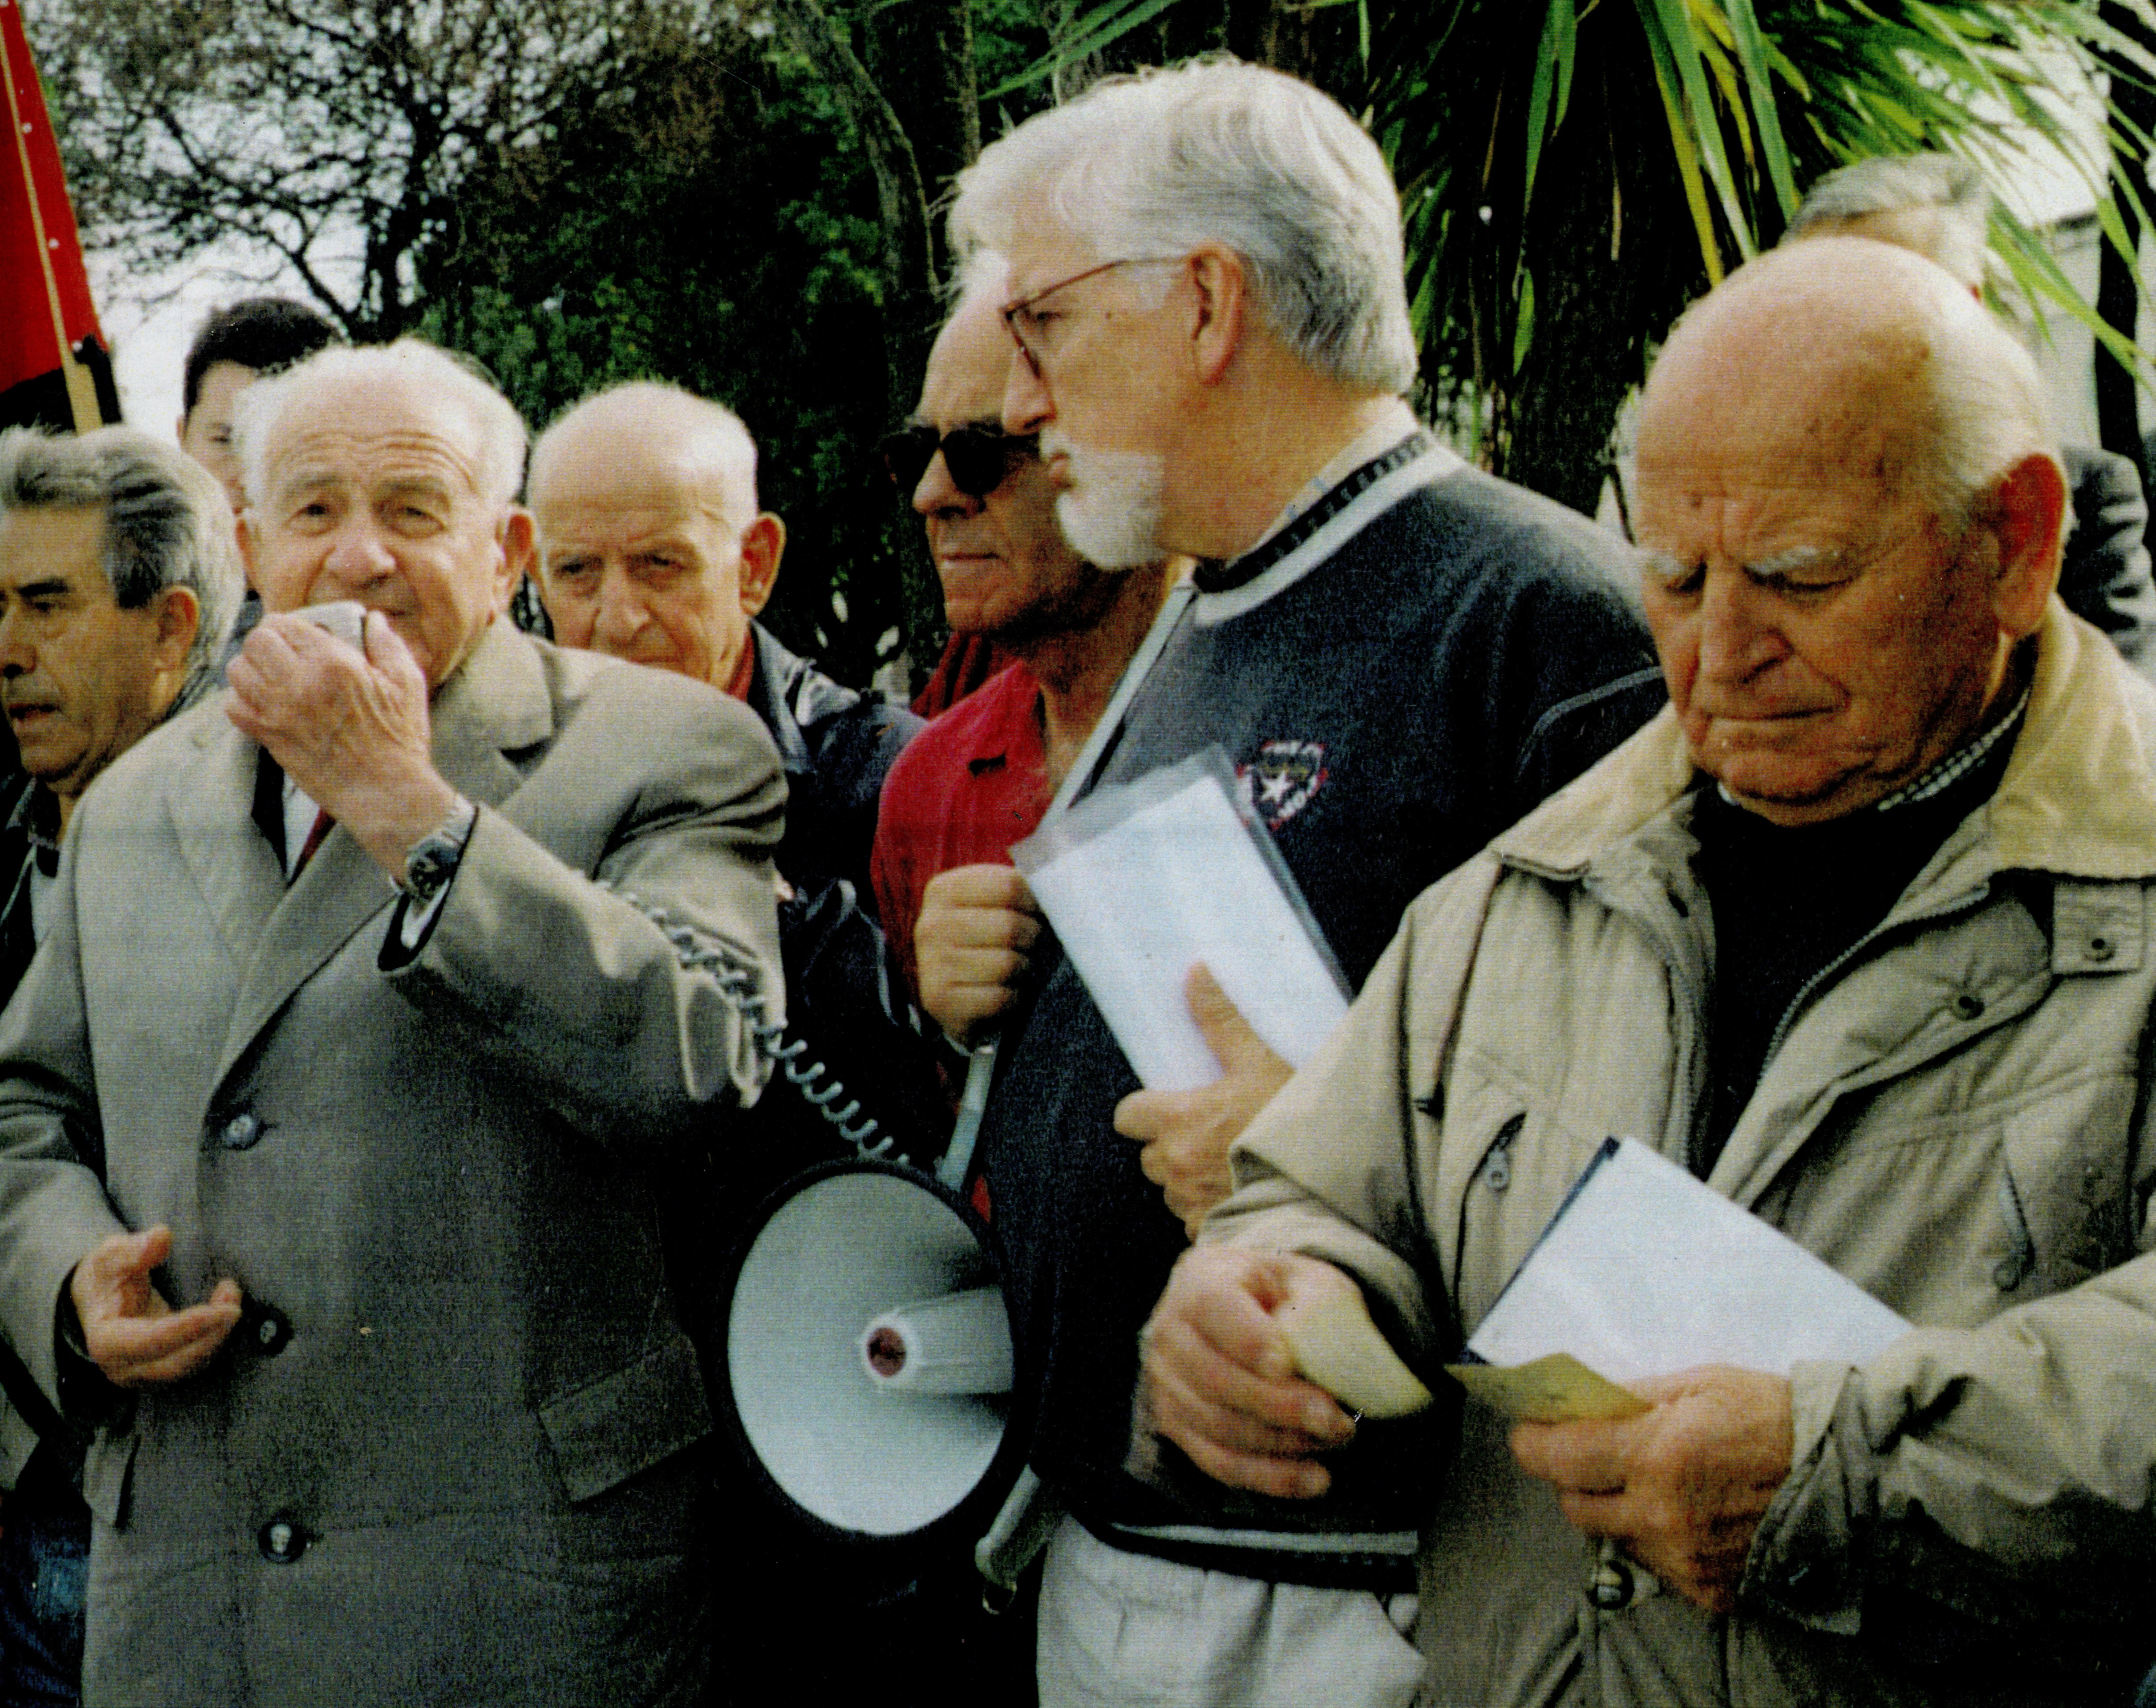 Acto homenaje que la primera "Caravana de la memoria" realizó en el cementerio de Ciriego en el otoño de 2000 (Foto cedida por la Asociación Guerra y Exilio)